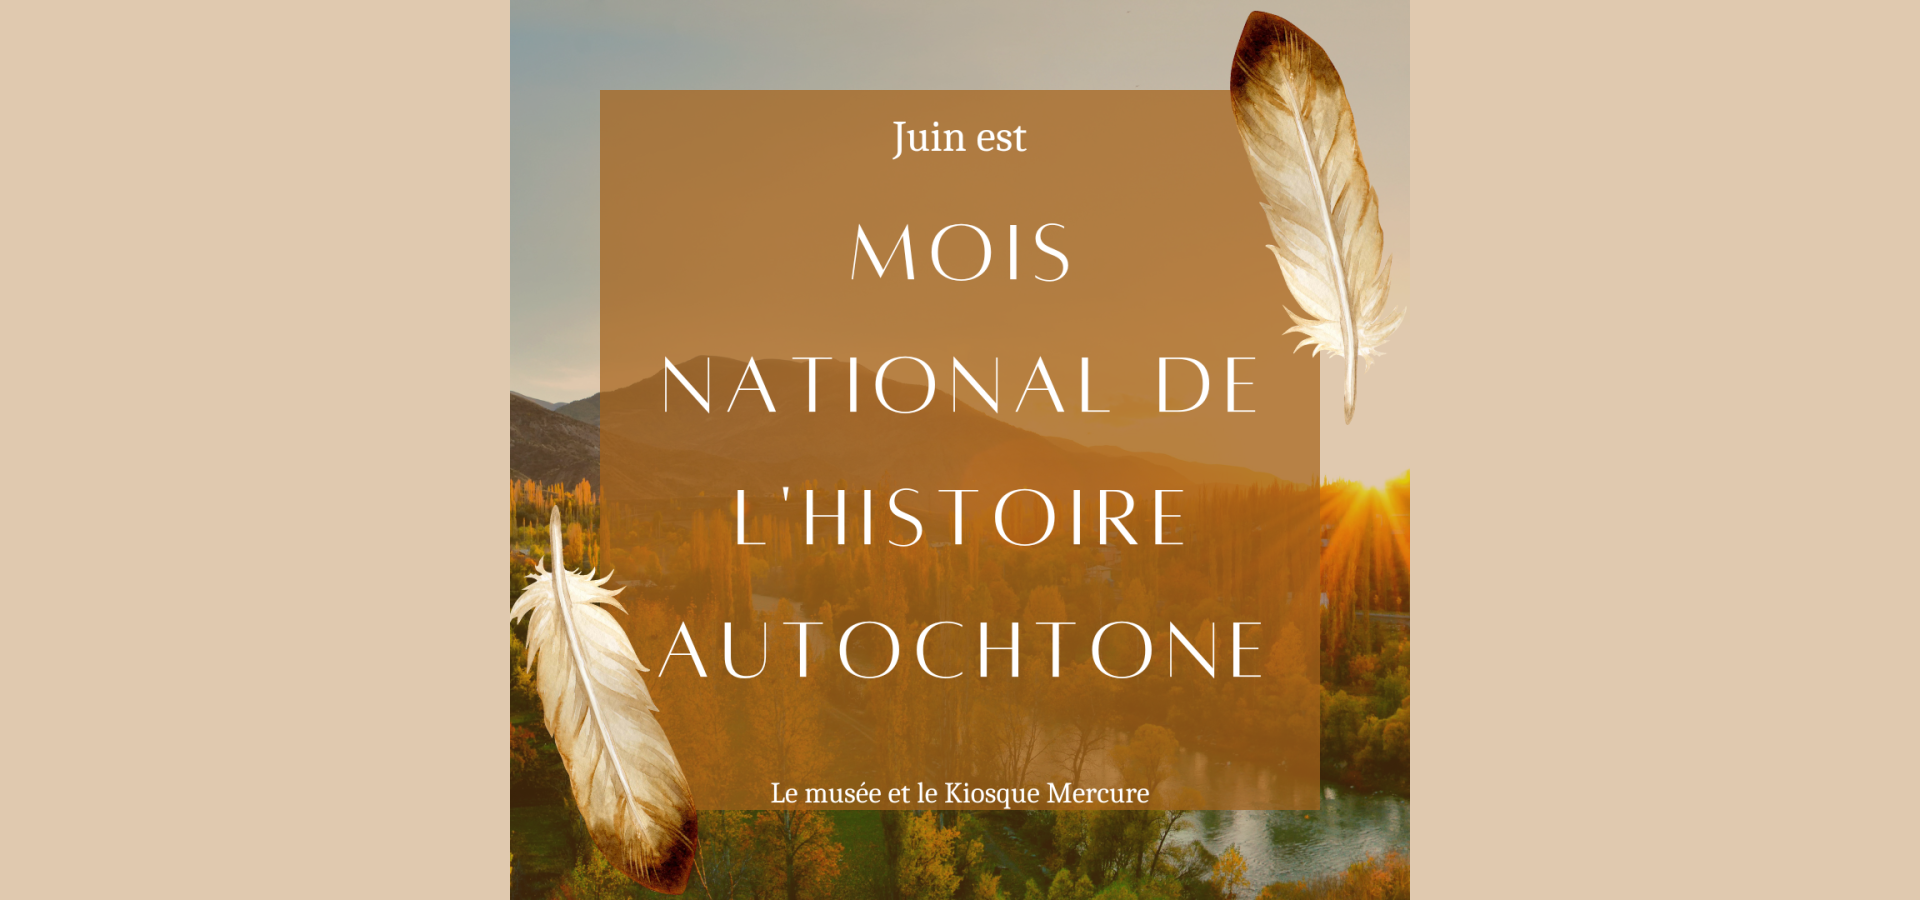 Moid national de l'histoire autochtone